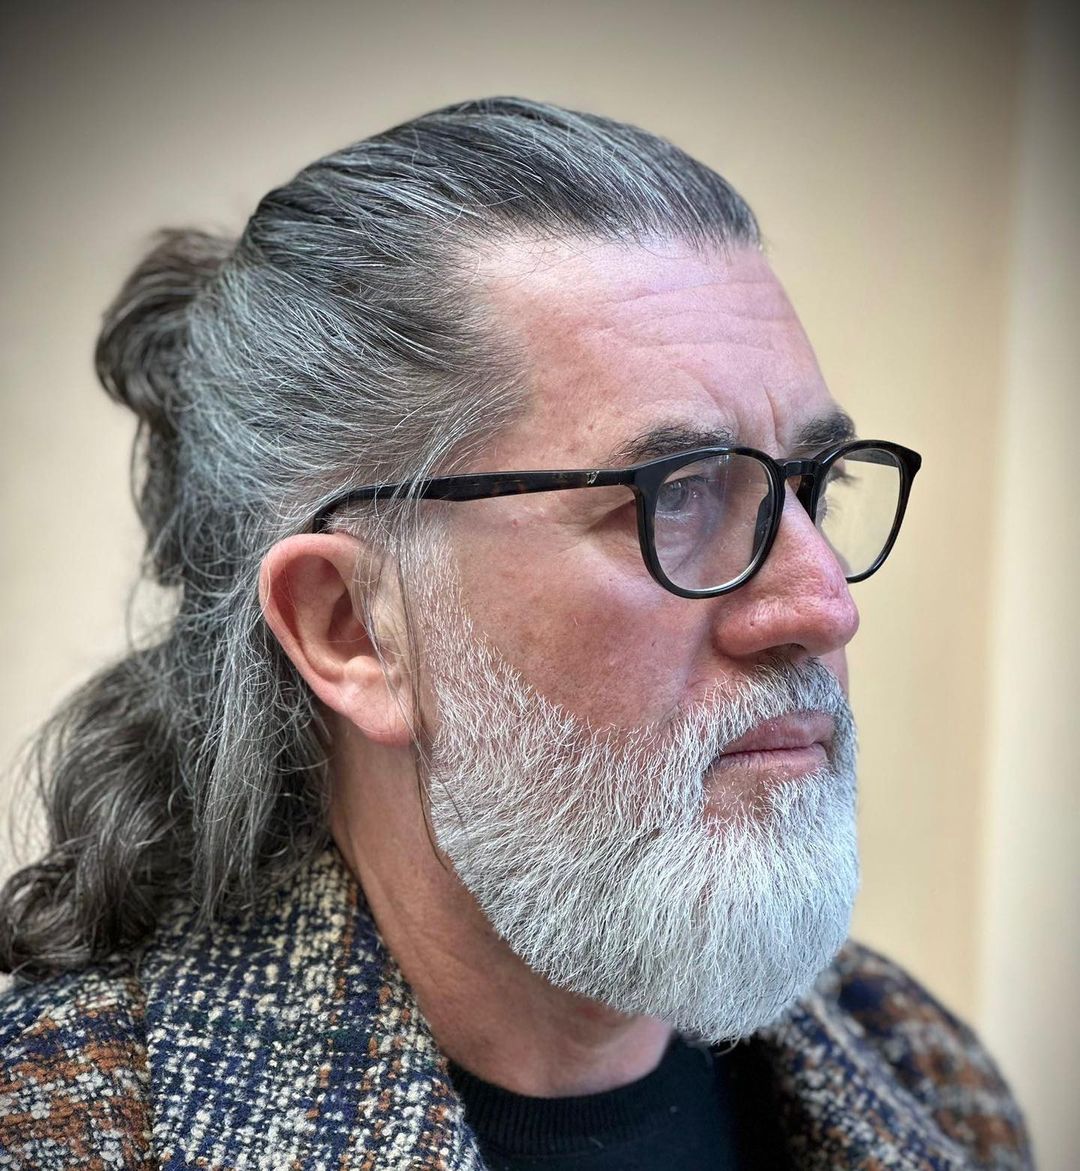 White beard style with long hair for older men